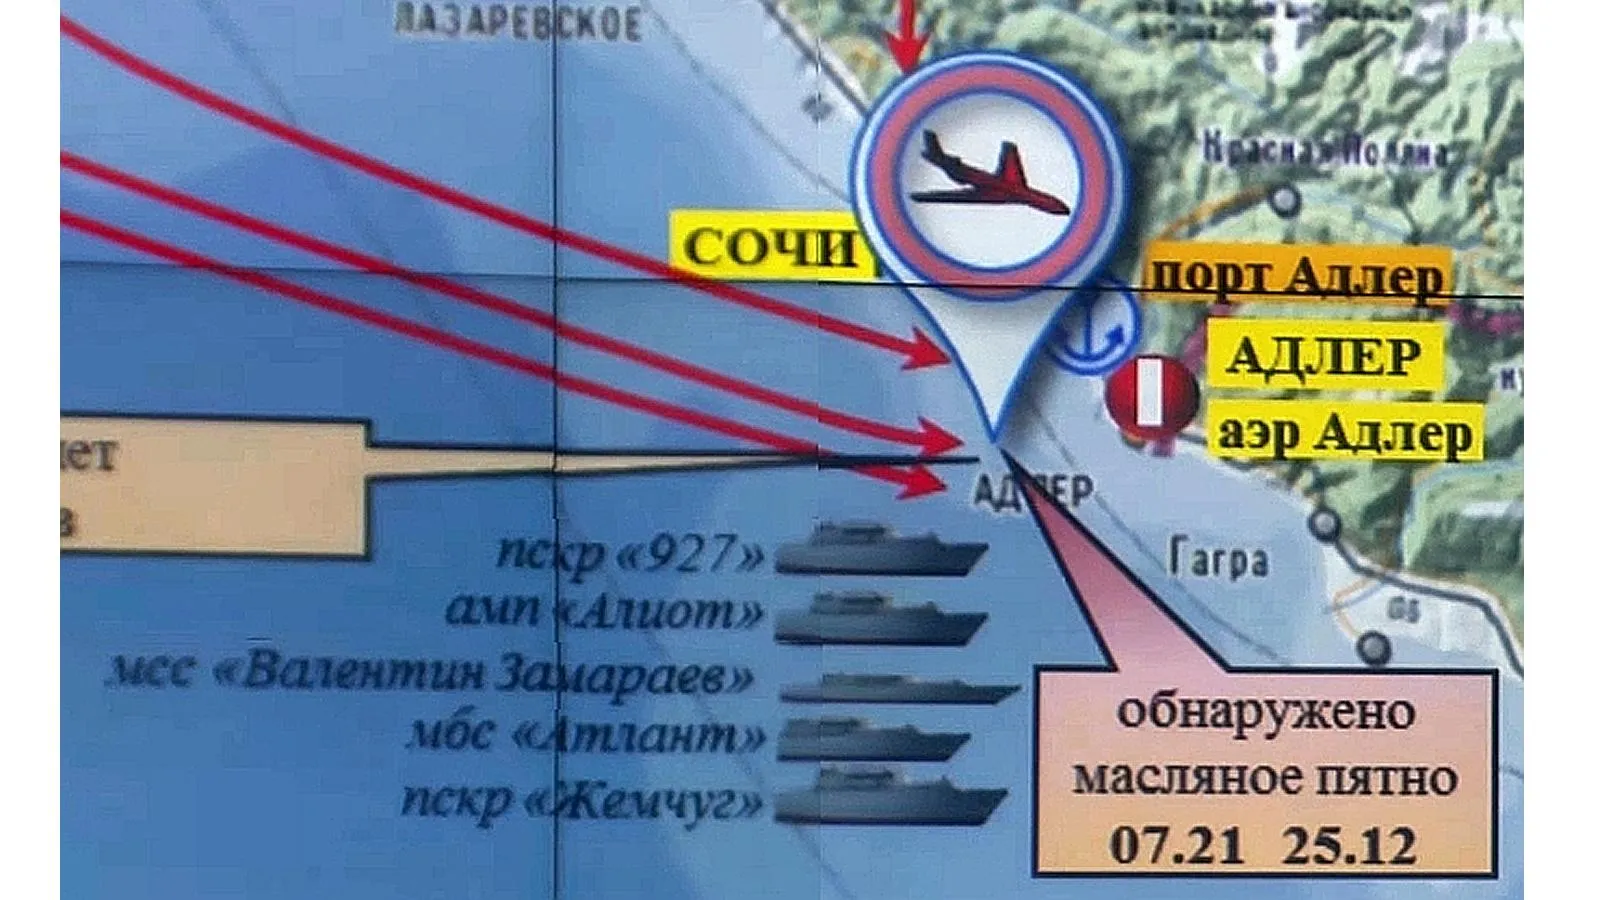 Схема места катастрофы Ту-154 ВВС России, 2016 год